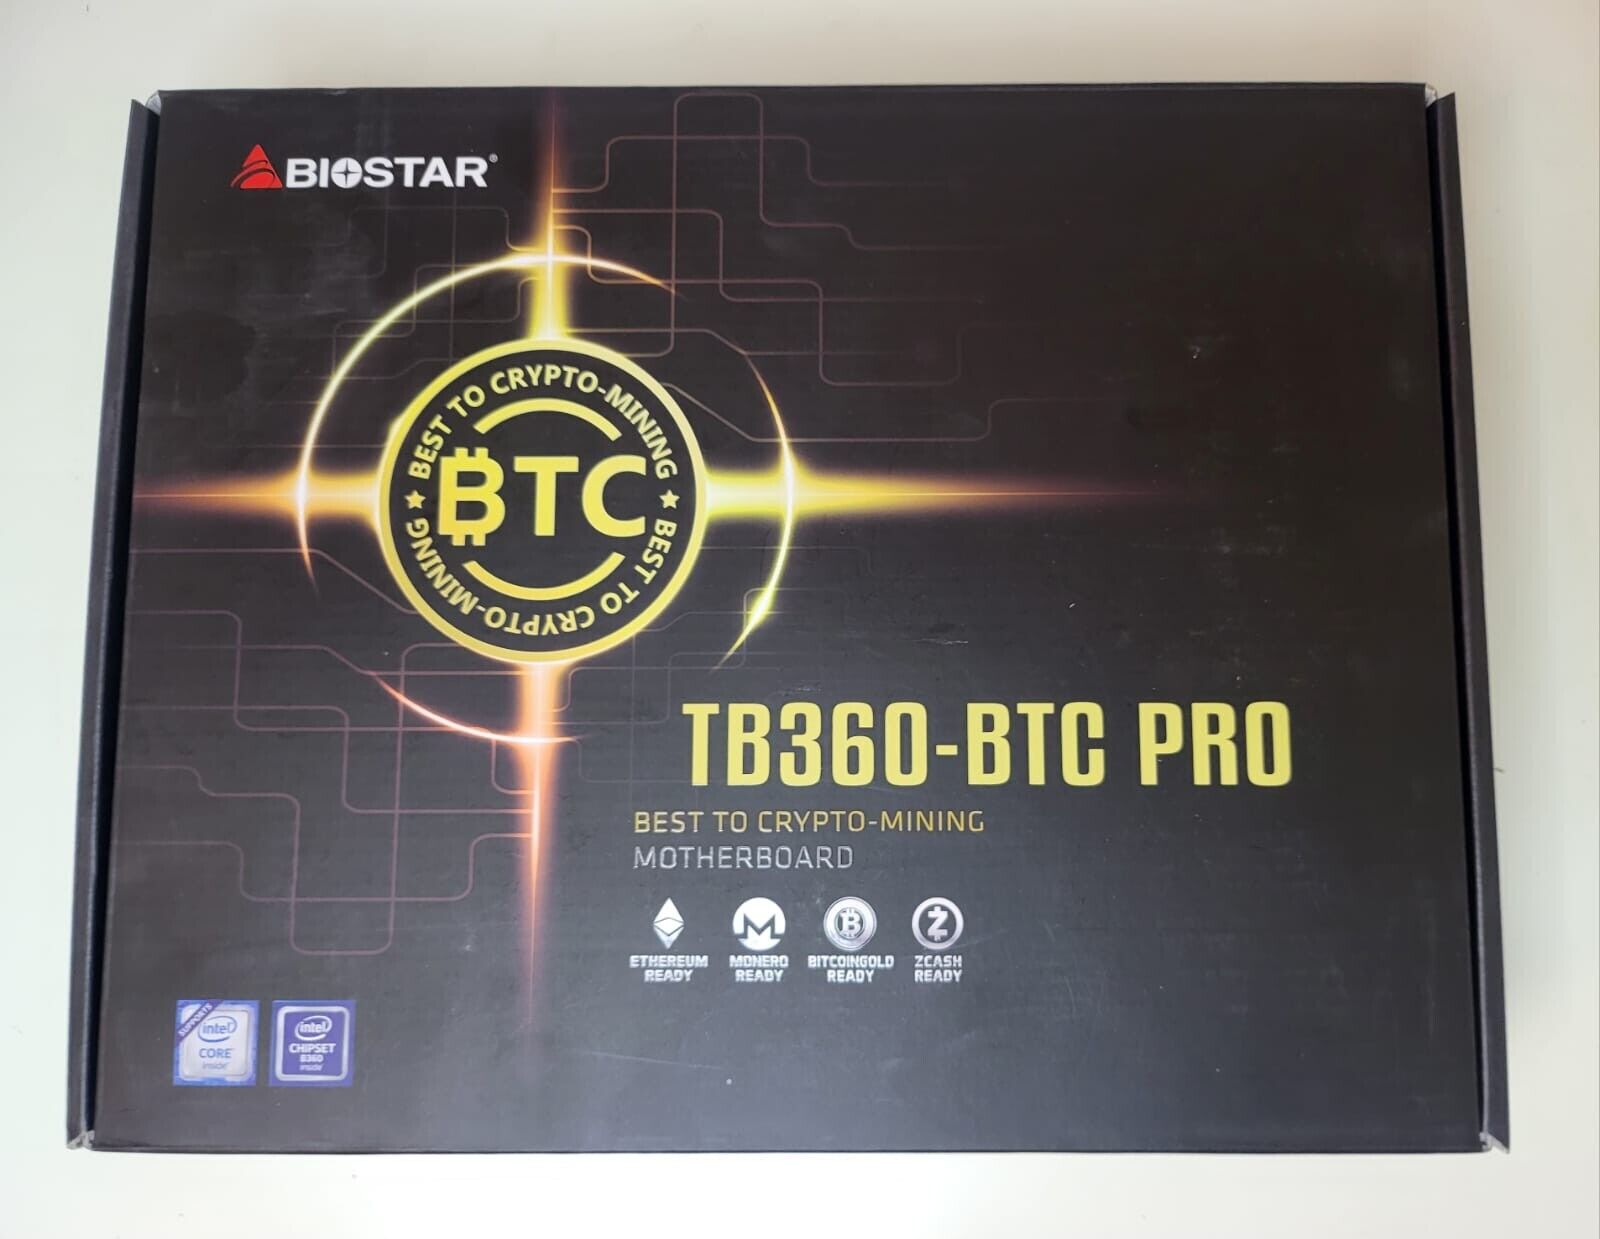 BIOSTAR TB360-BTC PRO Motherboard